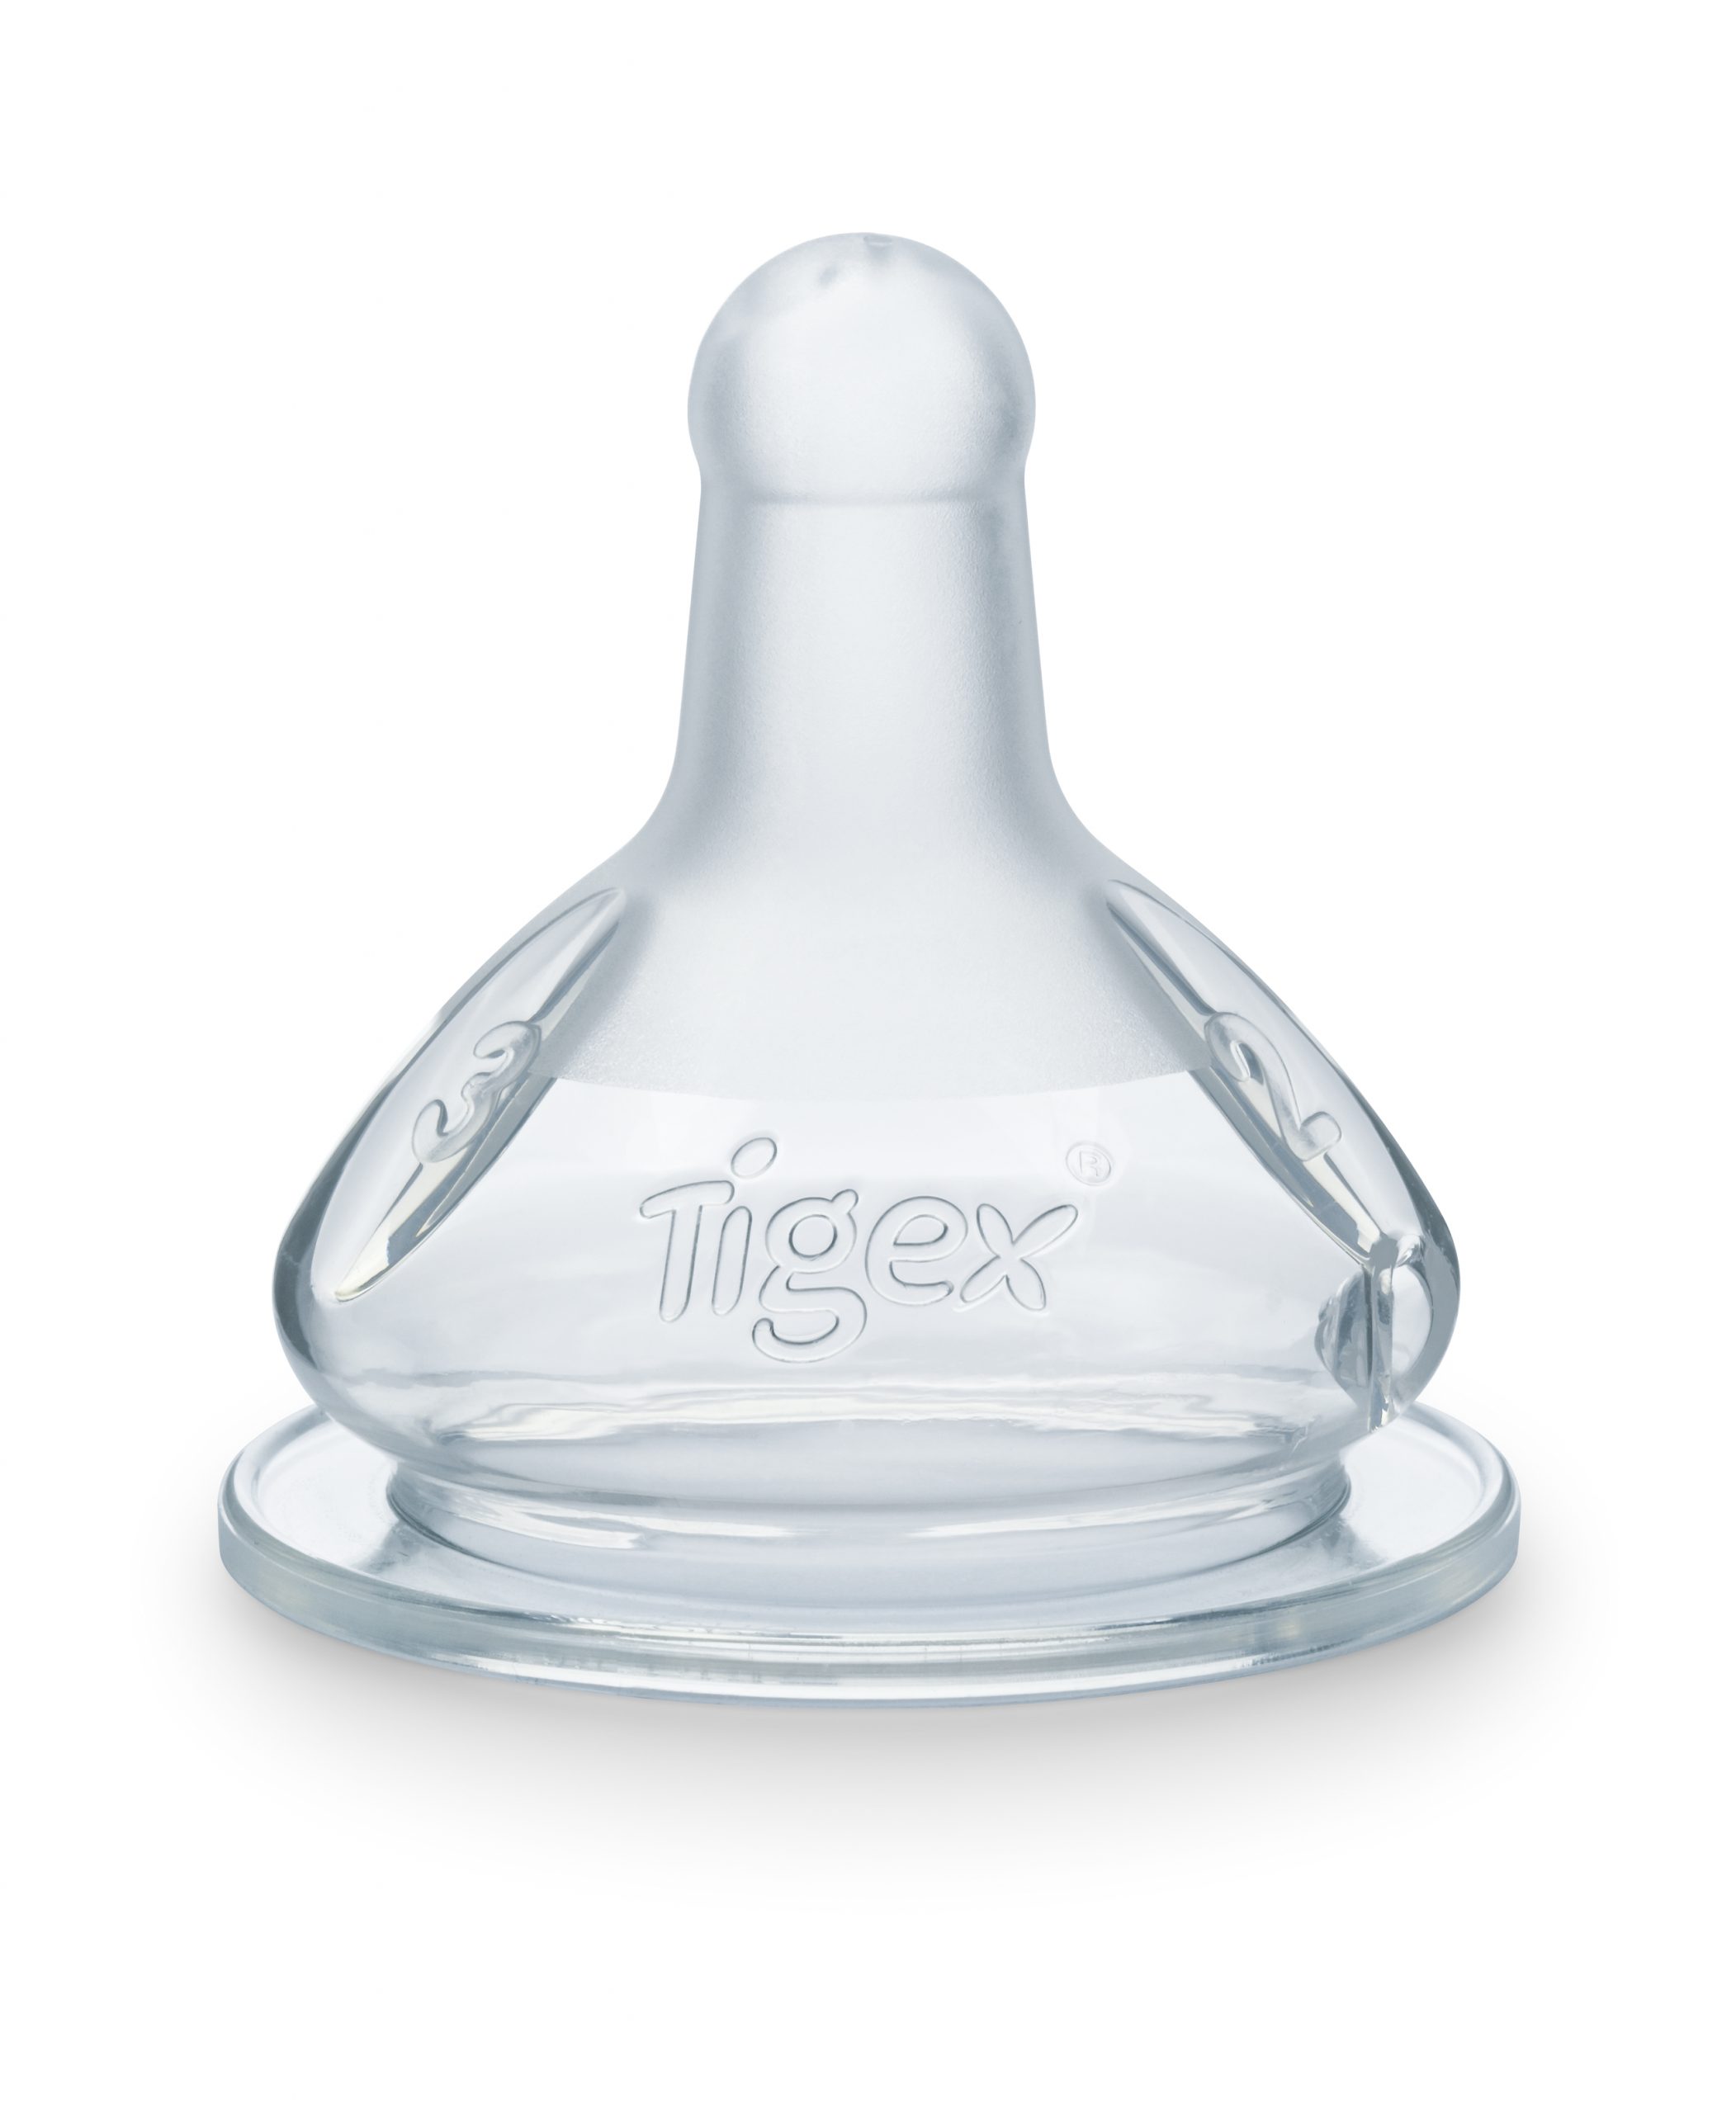 Biberon Tigex 300ml - Tigex